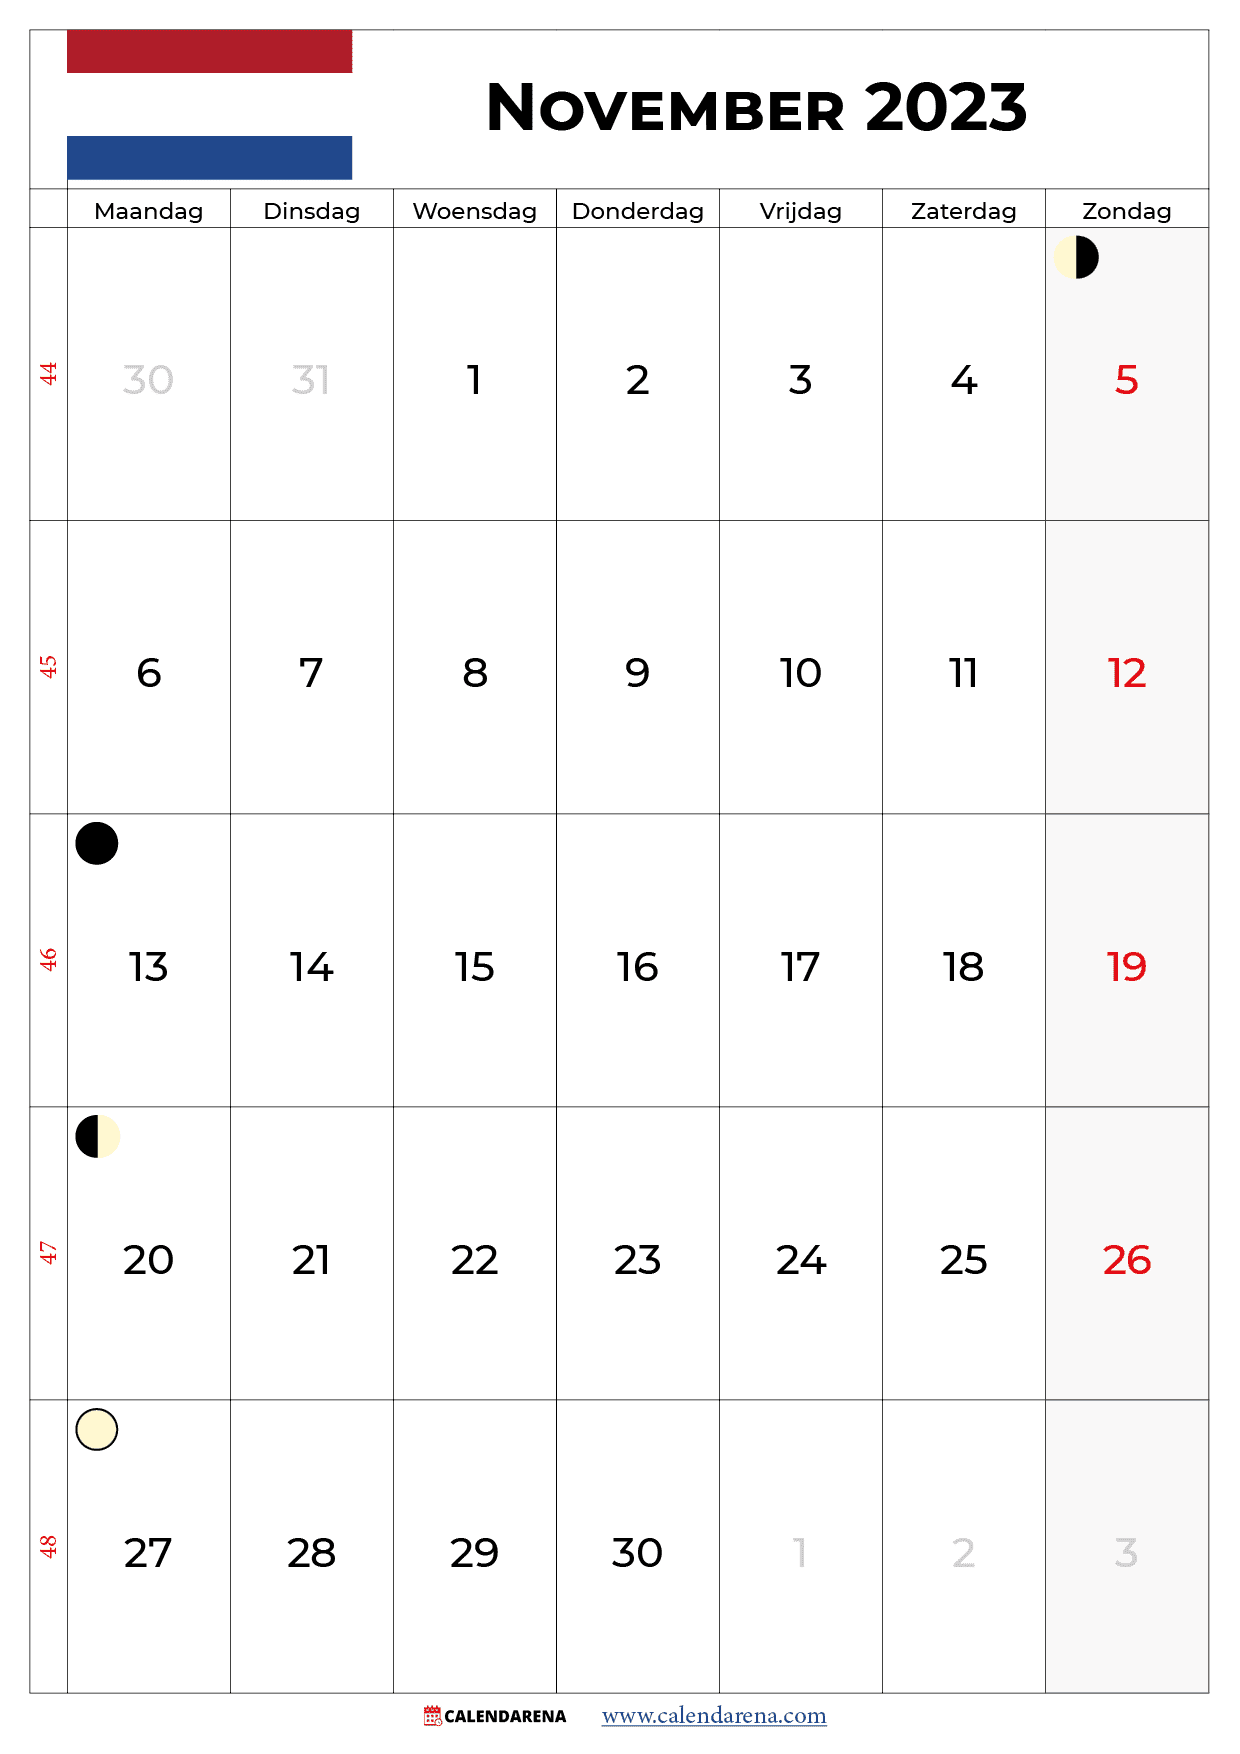 kalender november 2023 pdf nederland